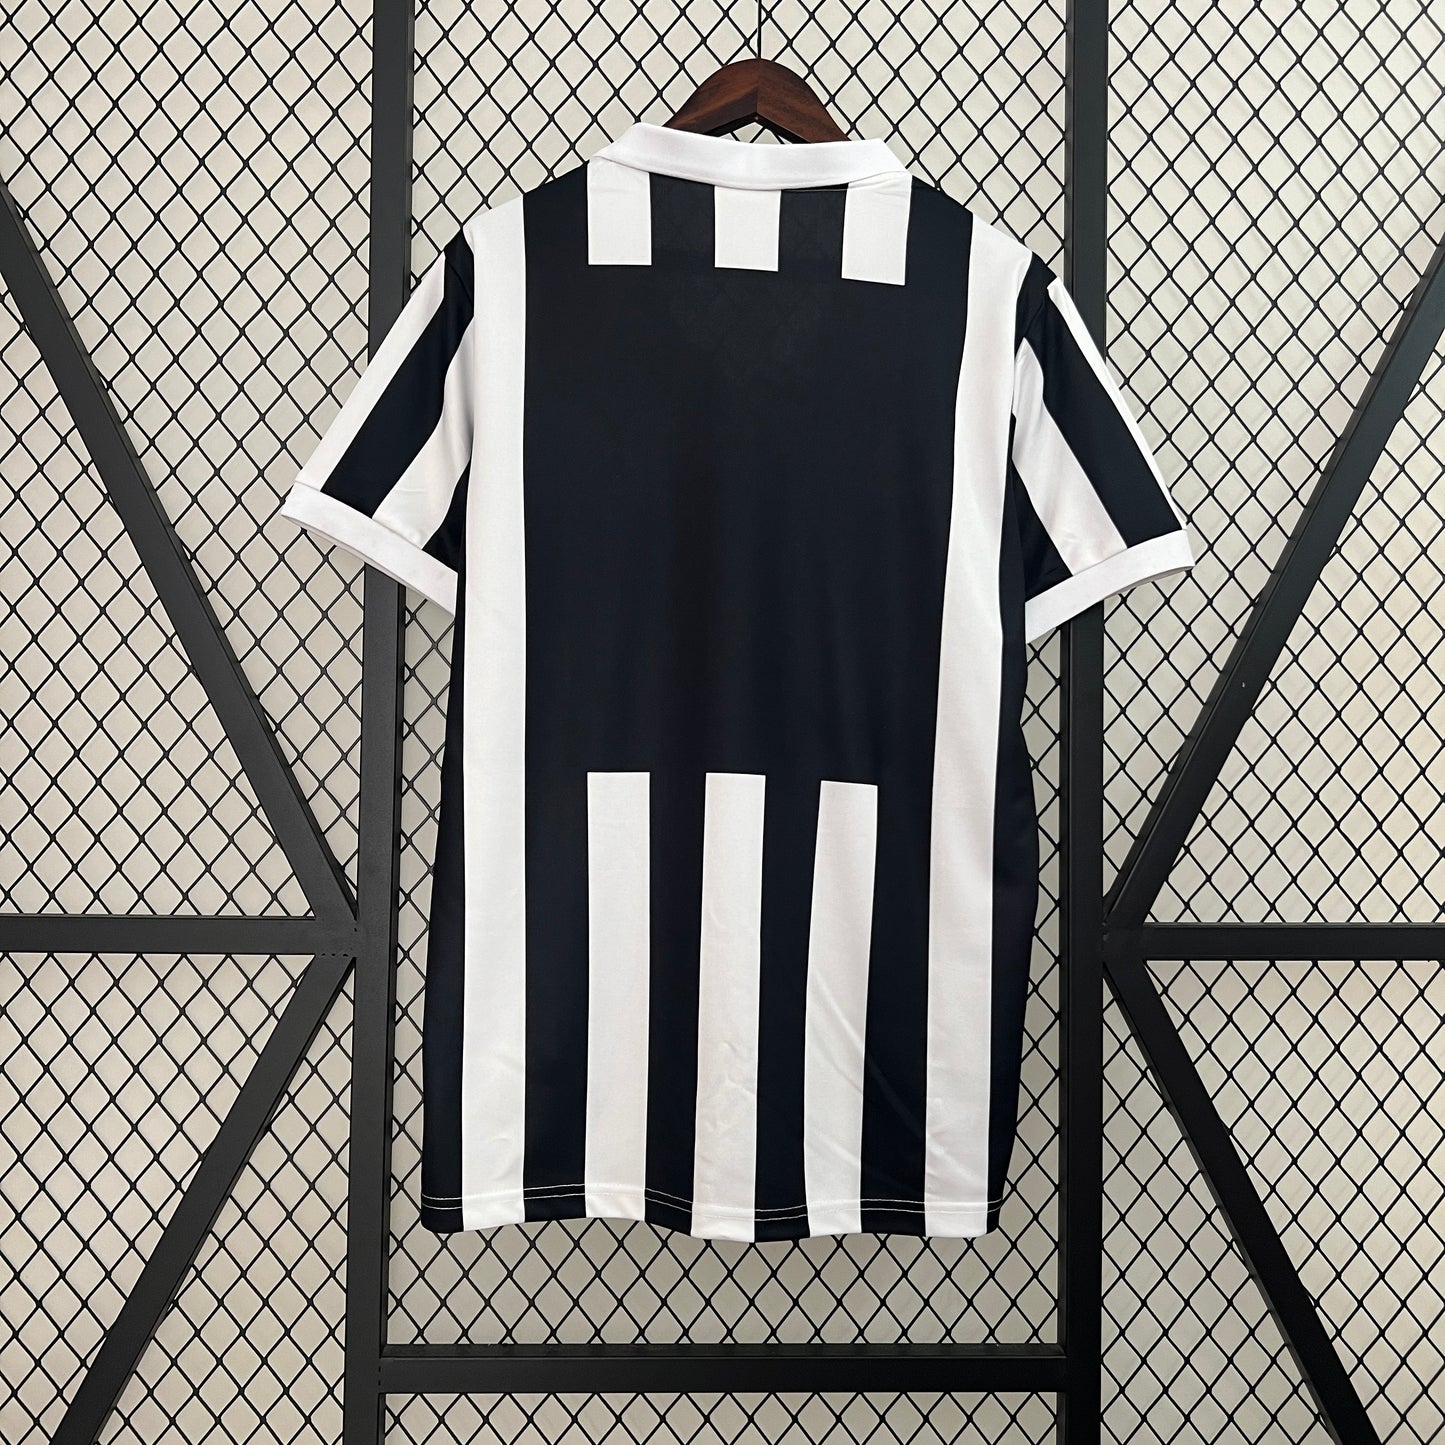 Retro Juventus 84/85 Home Kit